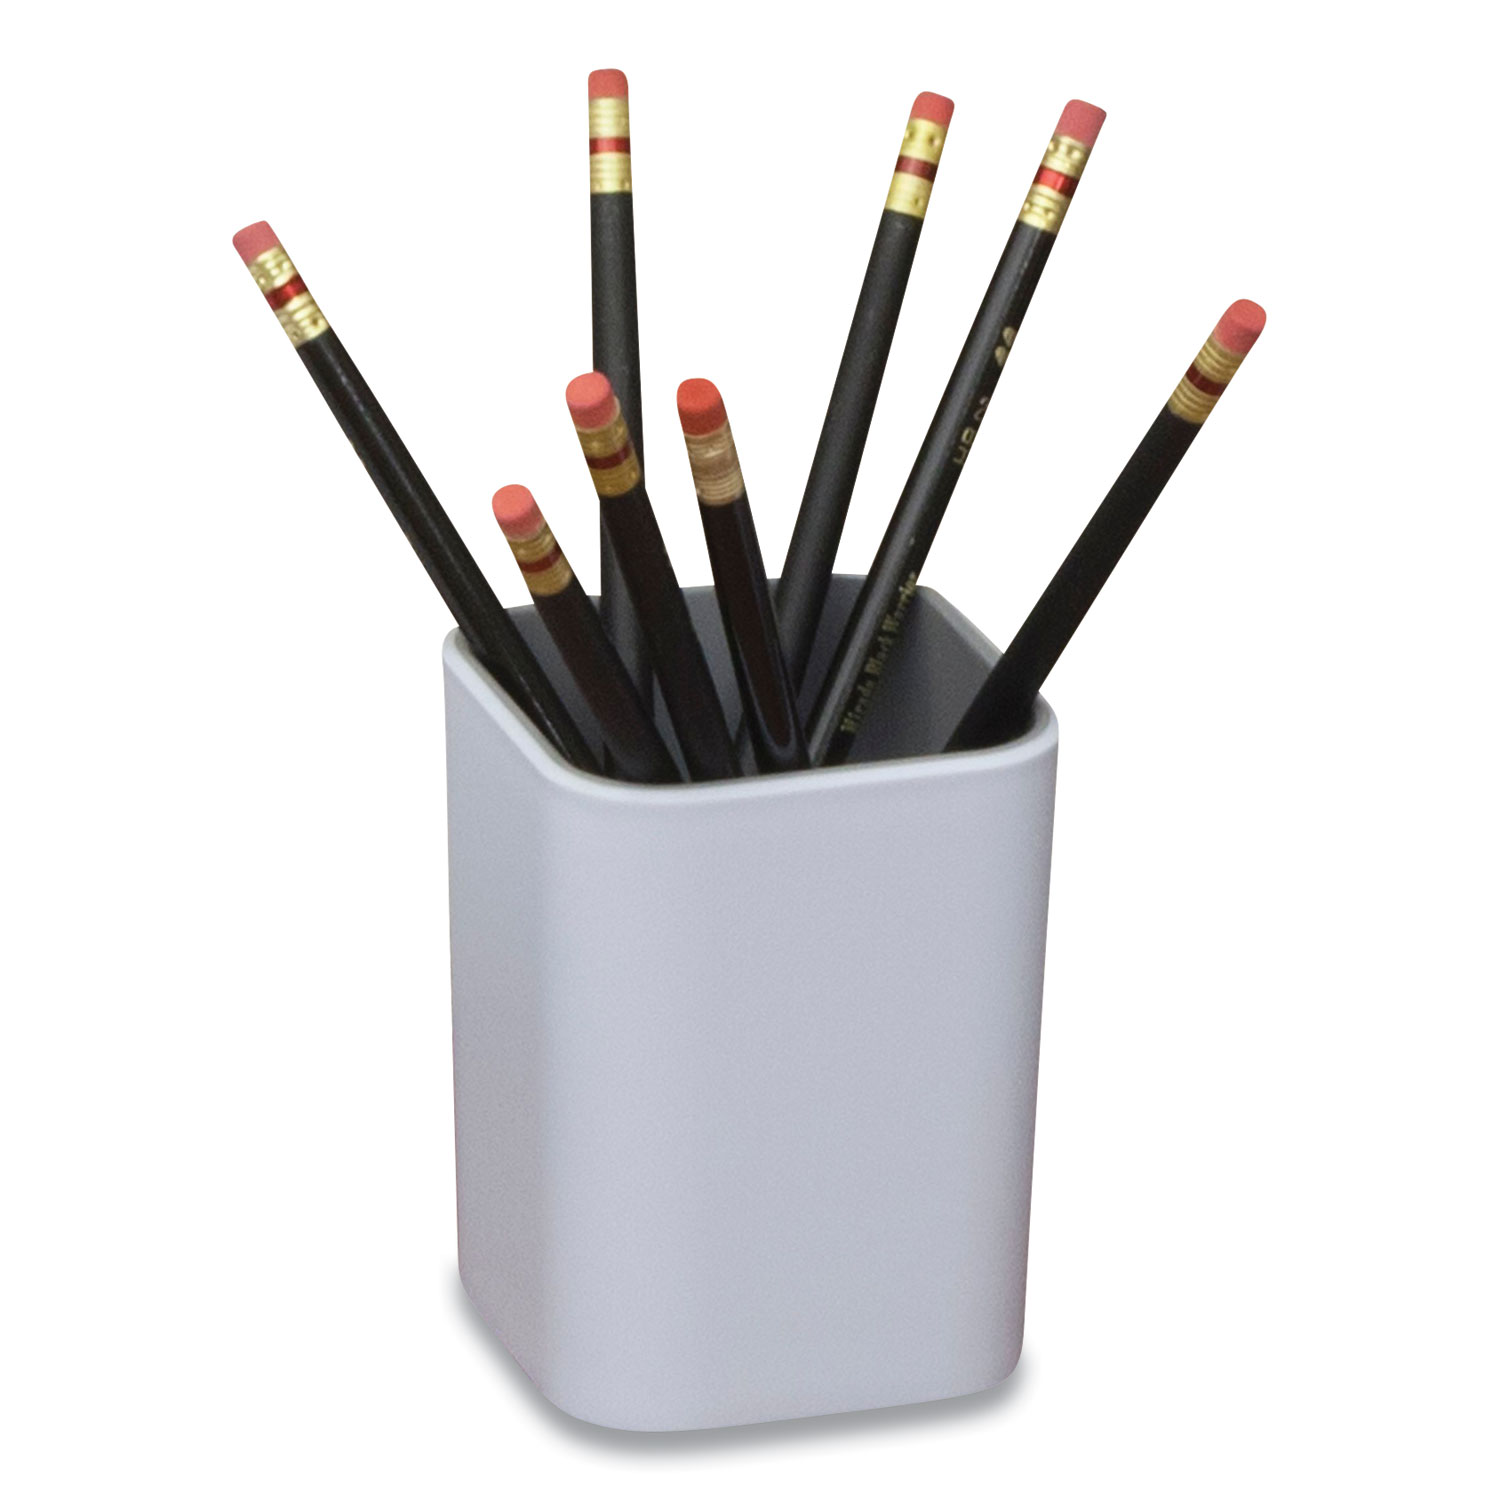  Advantus 37524 Fusion Pencil Cup, 3 x 3 x 4, White/Gray (AVT2432541) 